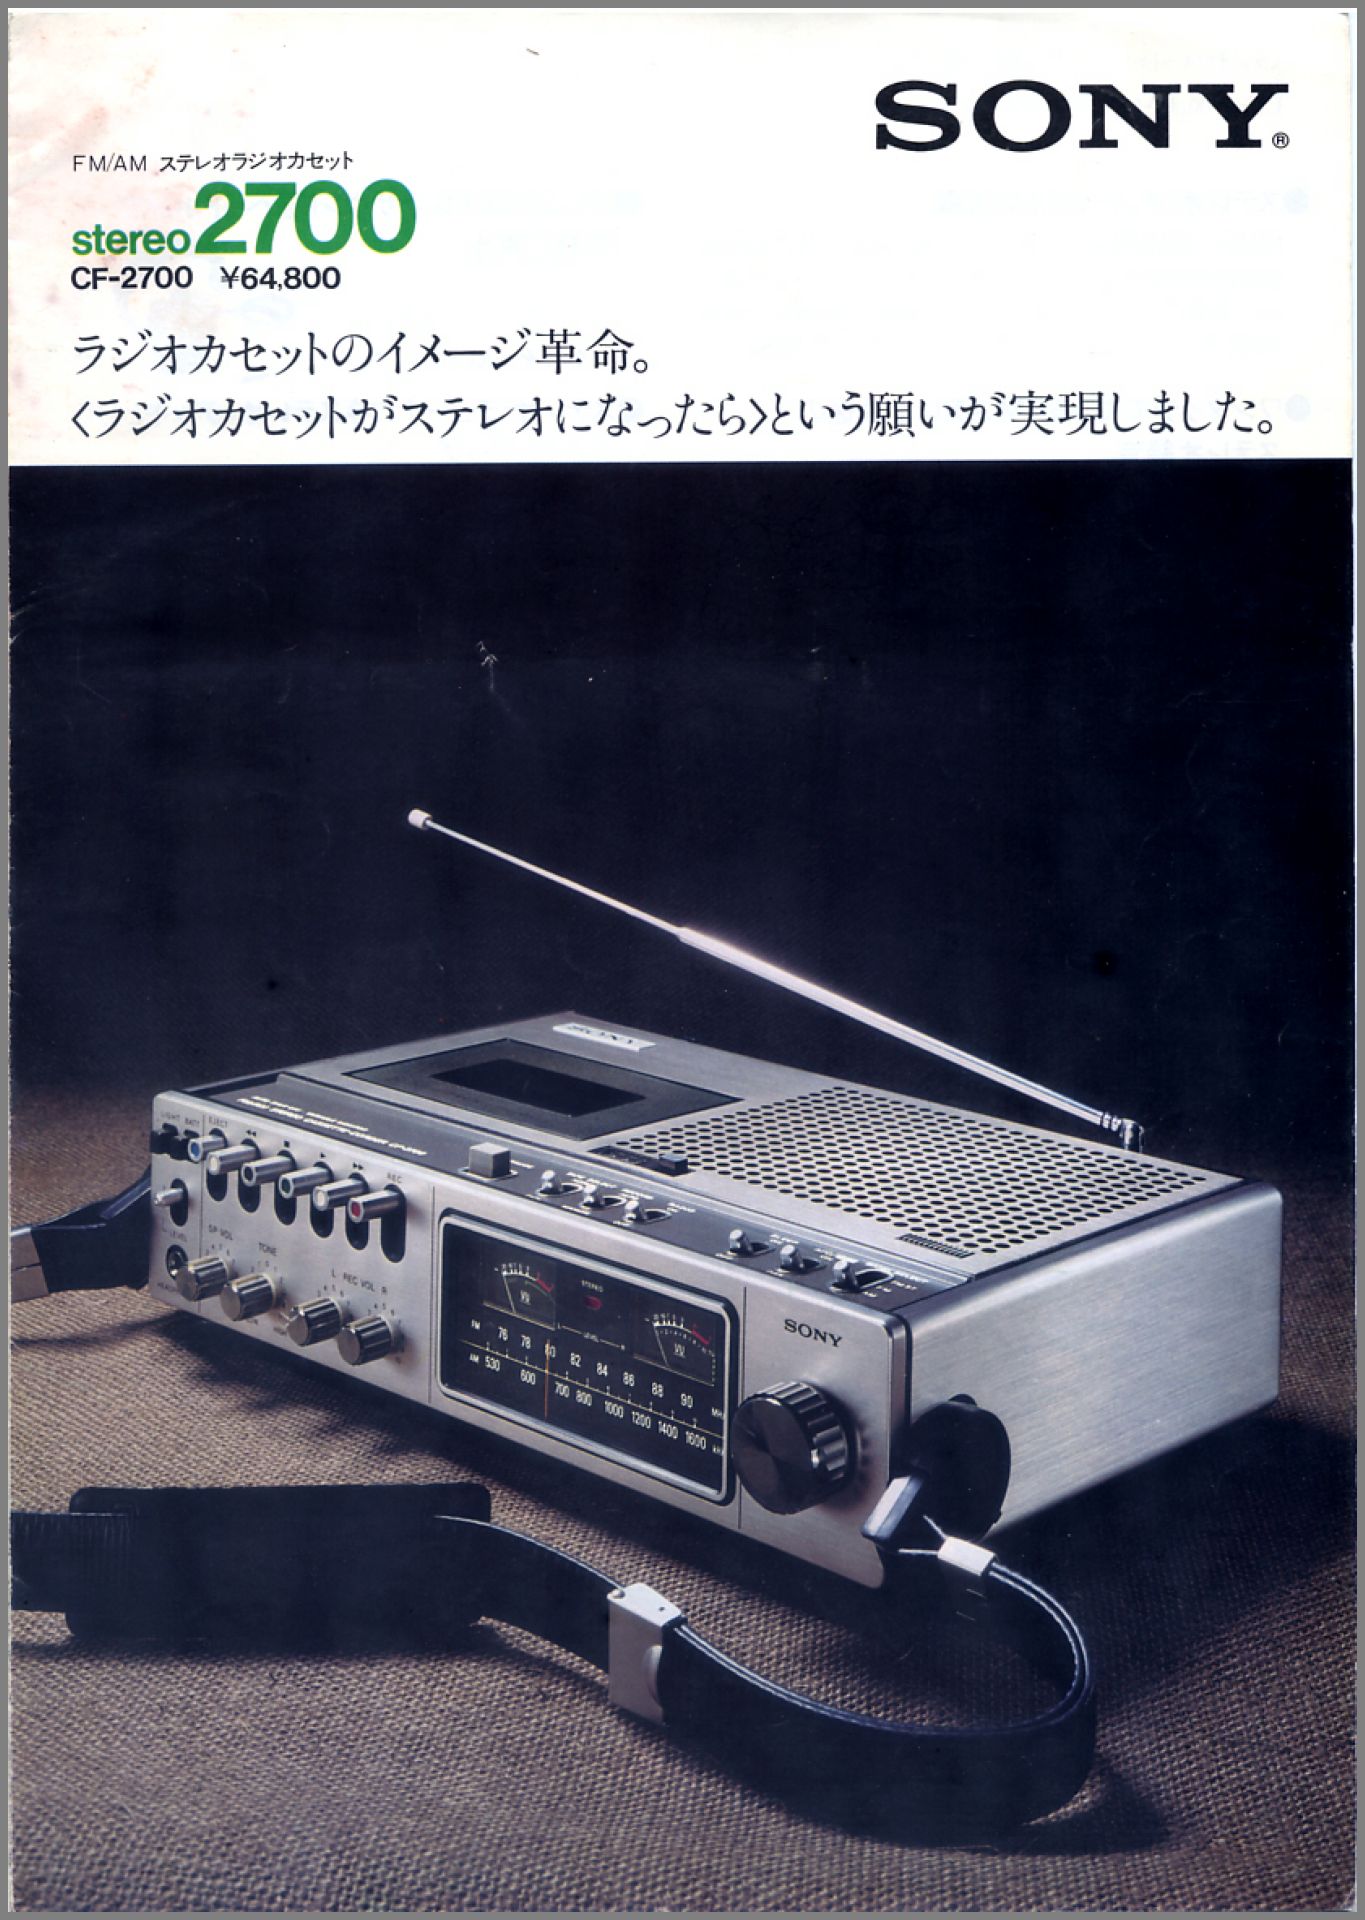 オーディオ機器SONY CF-2700 - ラジオ